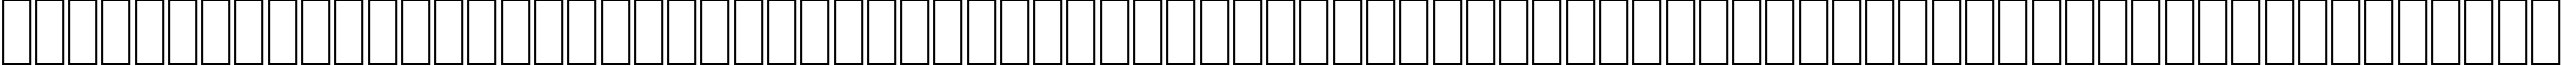 Пример написания английского алфавита шрифтом AGA Sindibad Regular